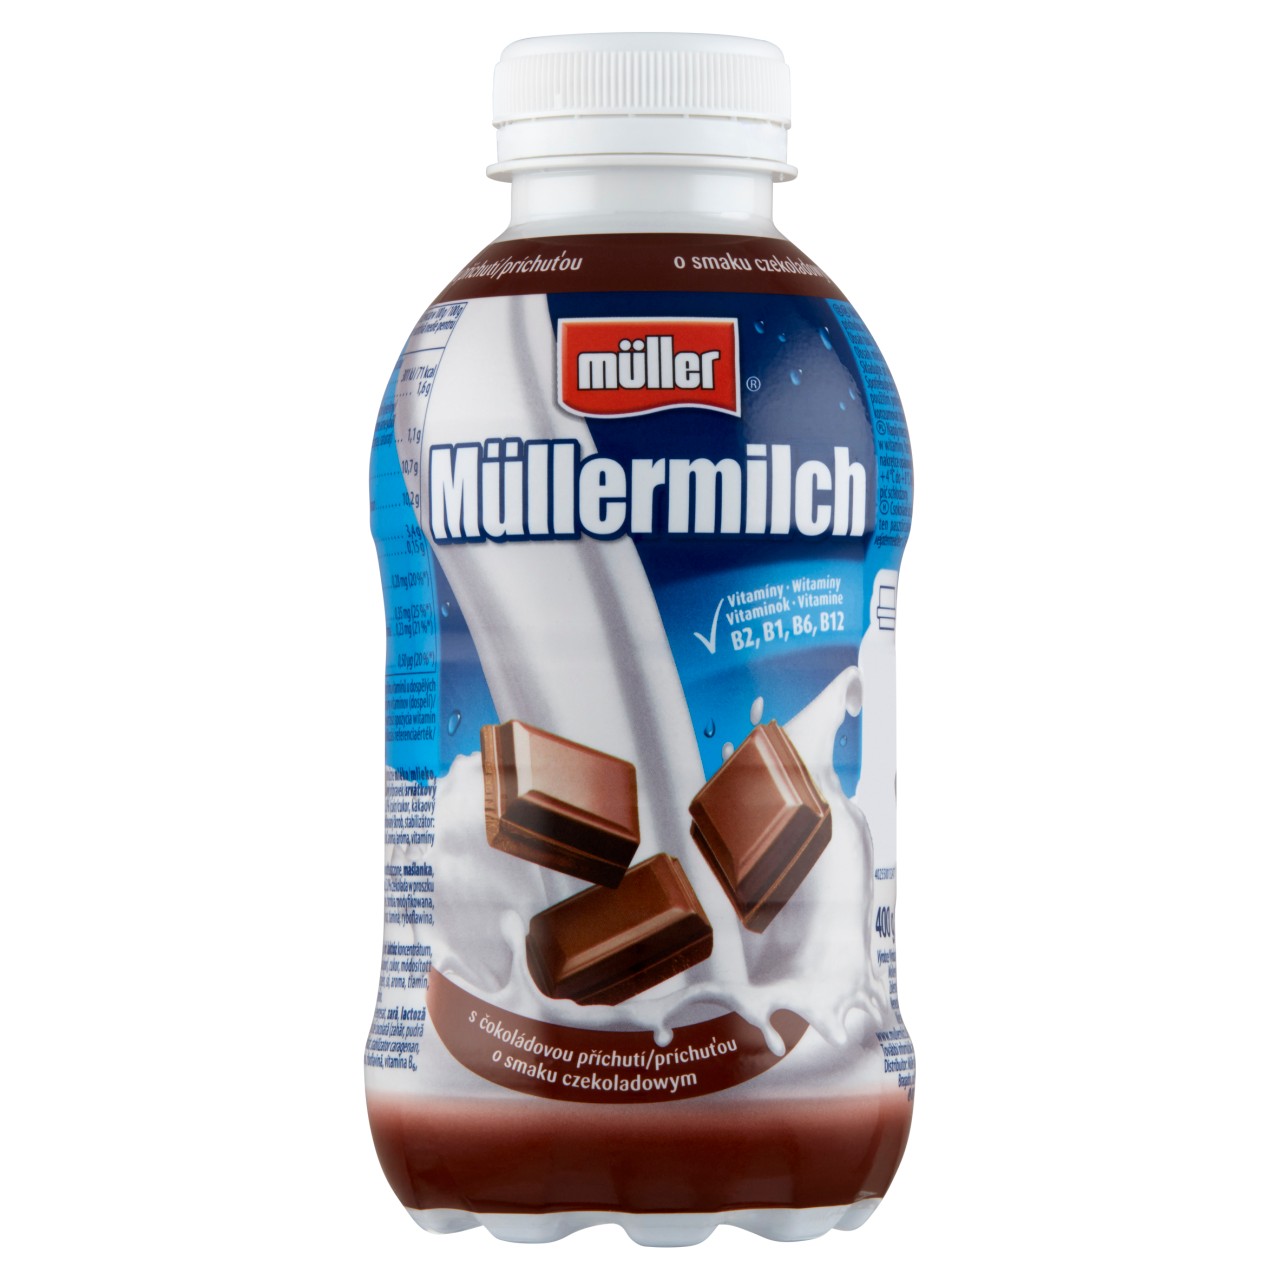 Müller Müllermilch czekoladowy Napój mleczny 400 g - Napoje mleczne -  zakupy online